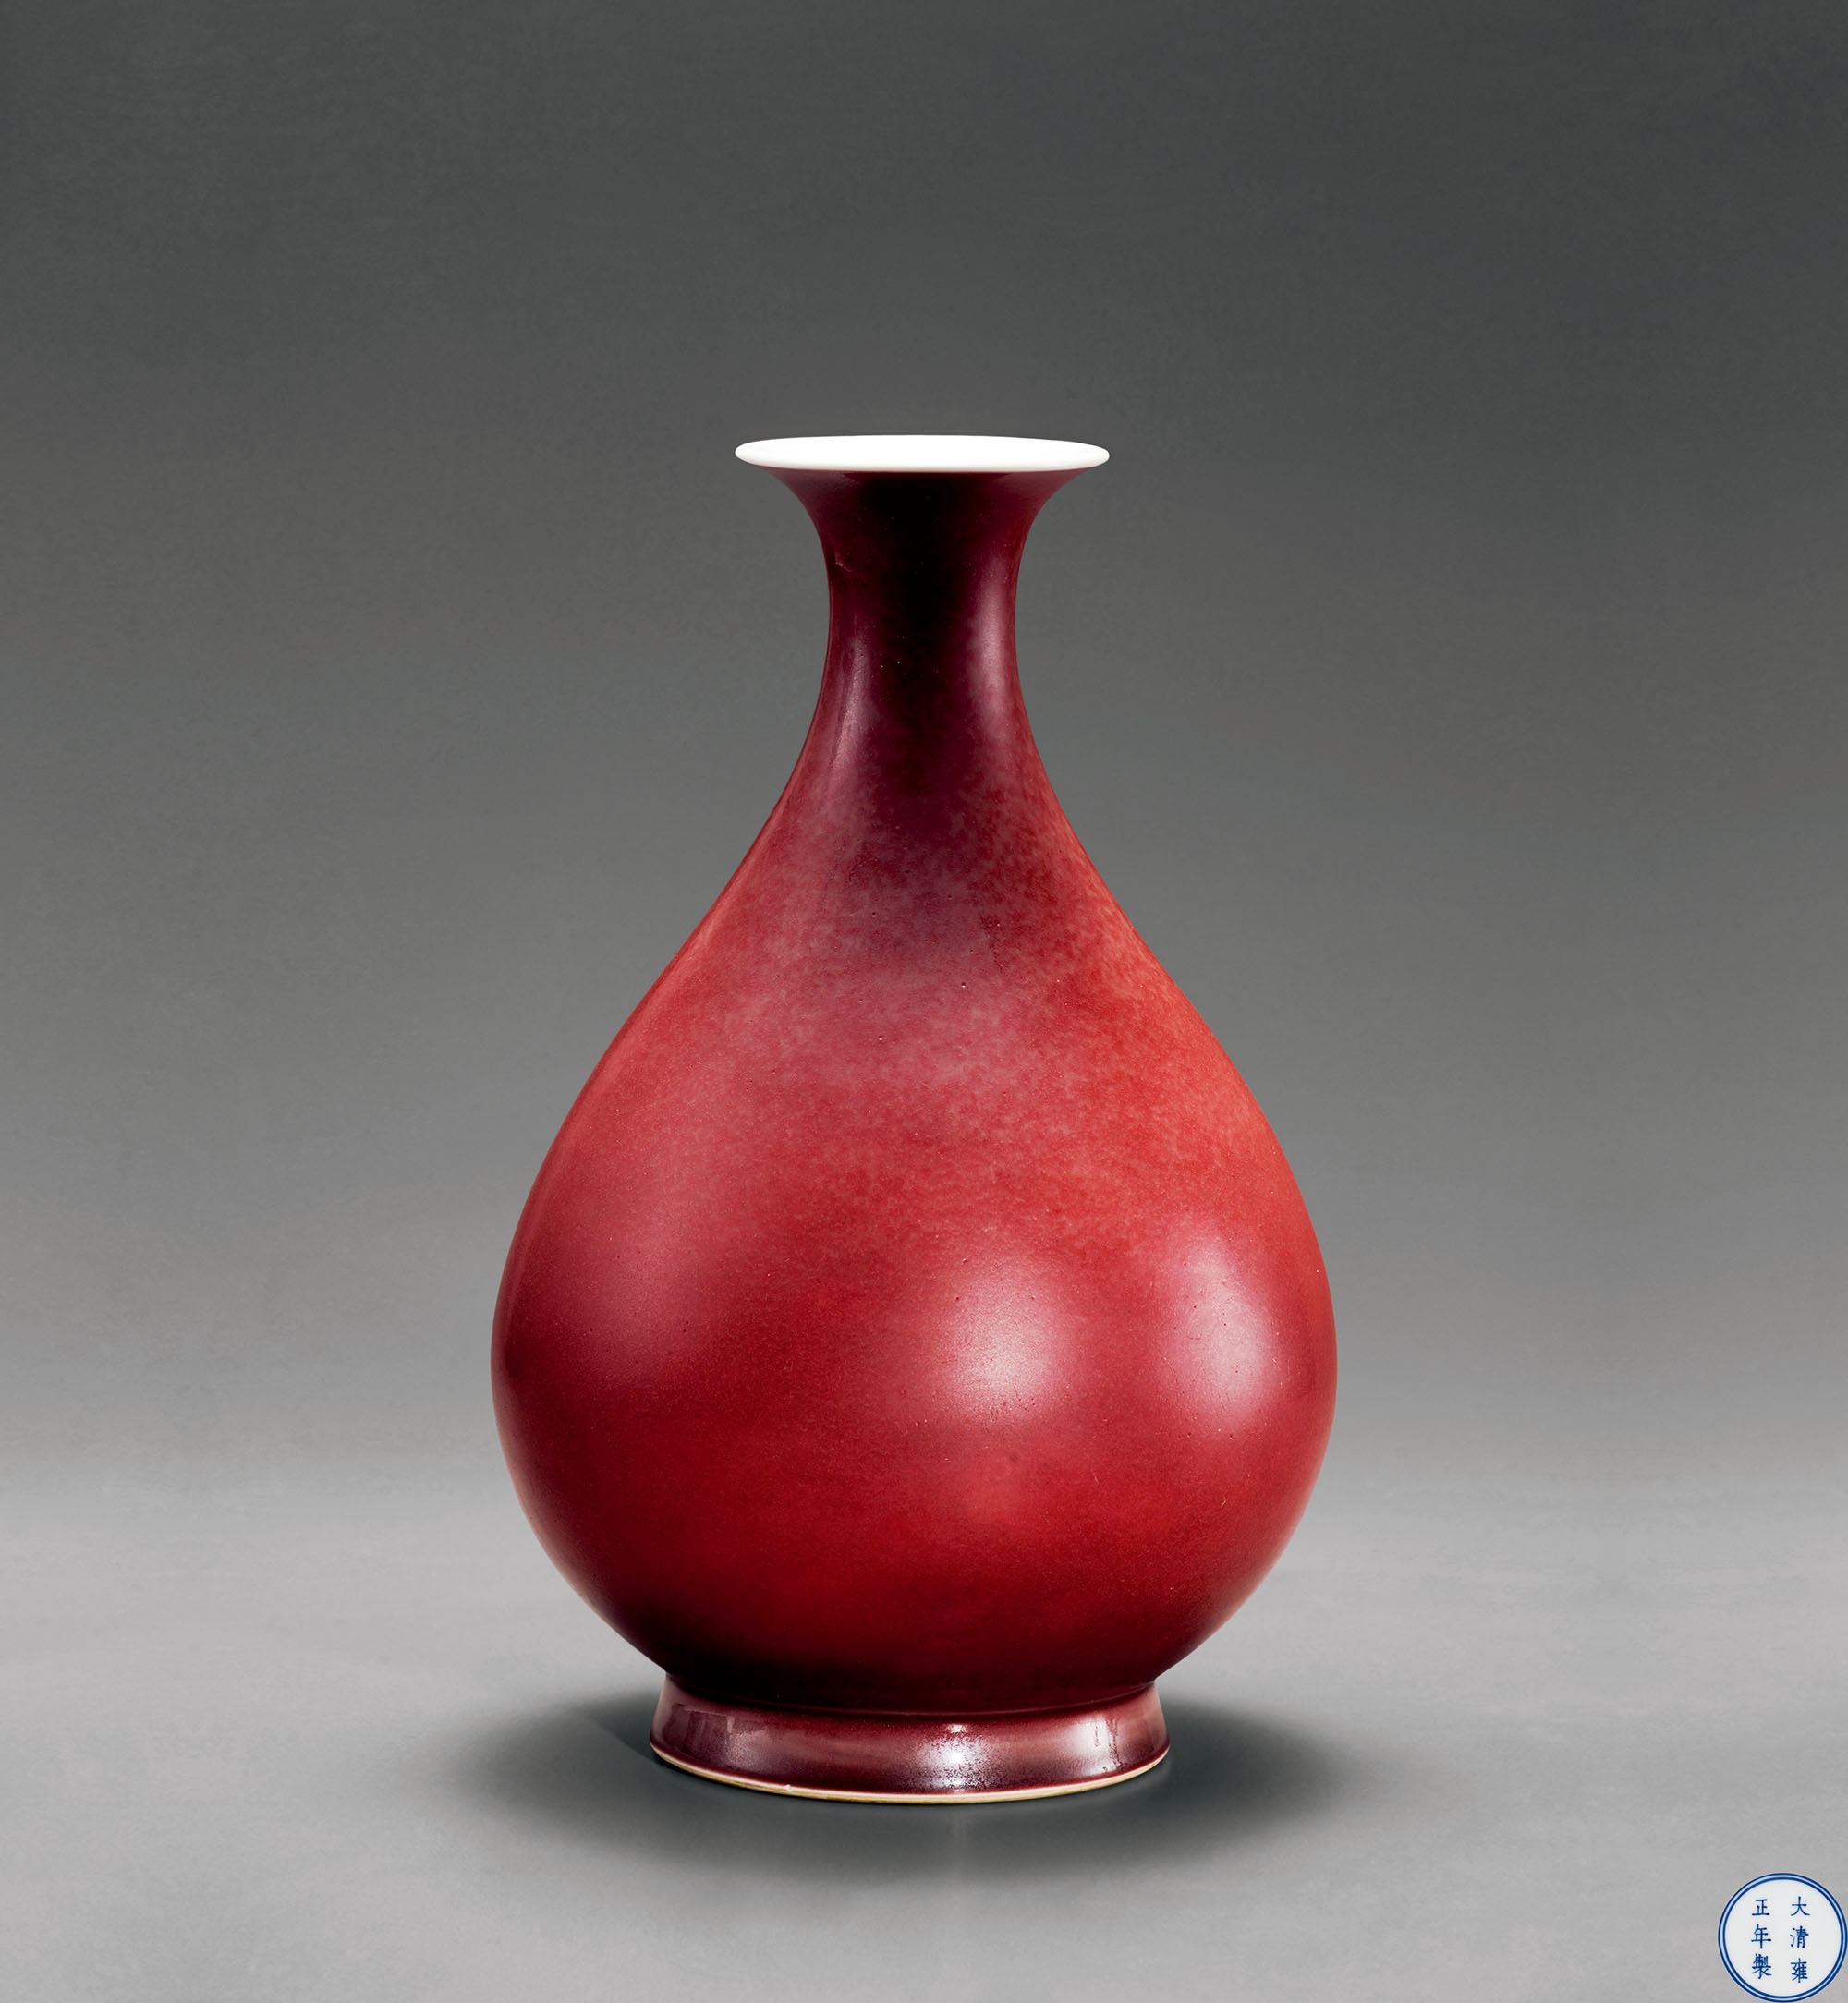 轶名,清雍正霁红釉玉壶春瓶,轶名作品拍卖预展,轶名作品拍卖价格,成都八